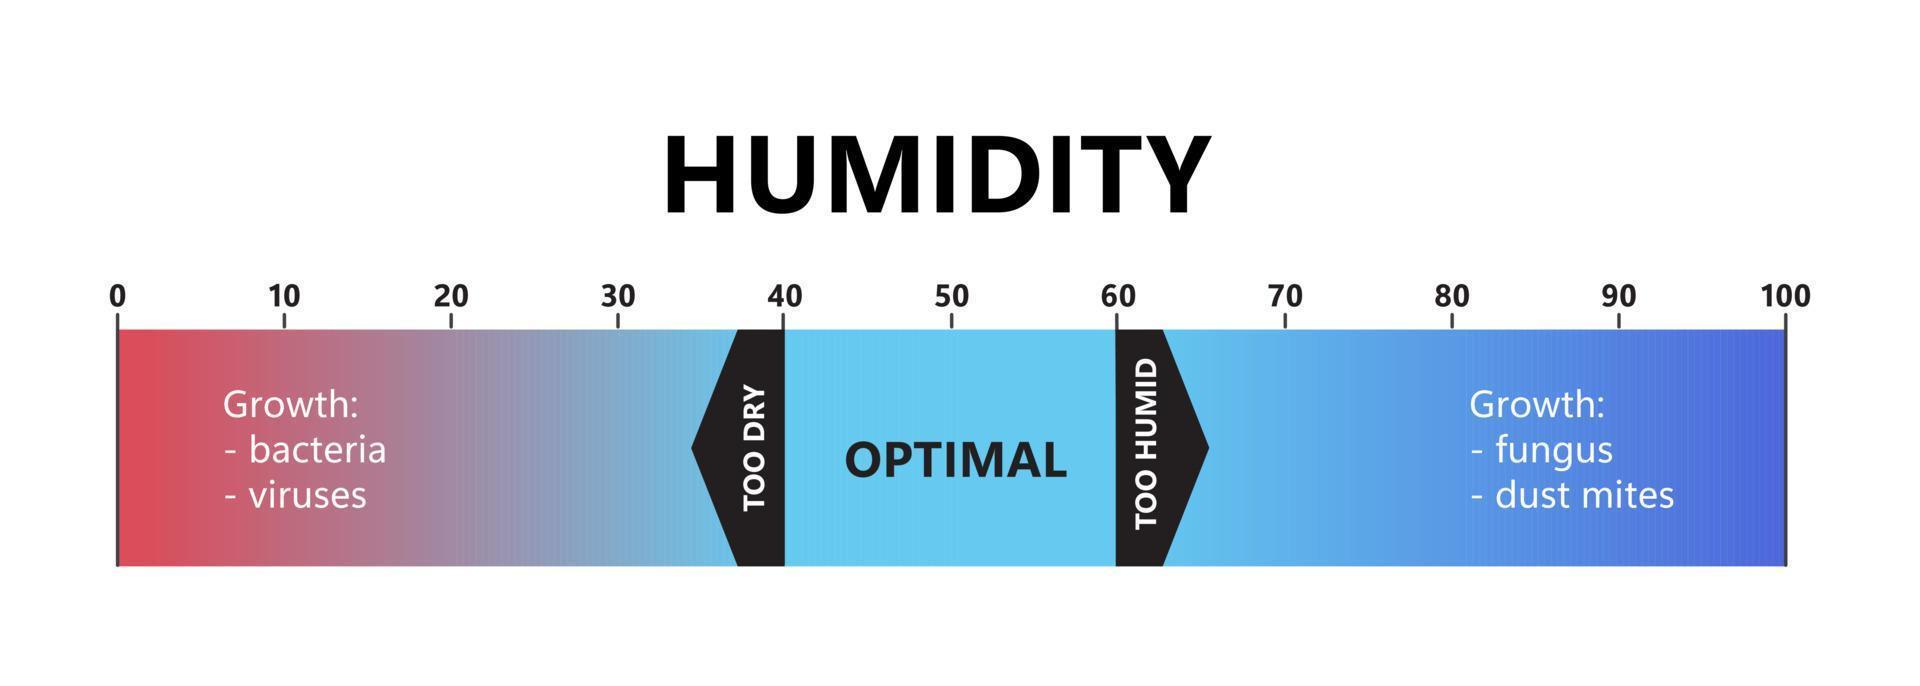 livello di umidità. umidità interna ottimale, aria troppo secca e troppo umida. scala del gradiente di qualità dell'aria. condizioni microclimatiche confortevoli. illustrazione vettoriale isolato su sfondo bianco